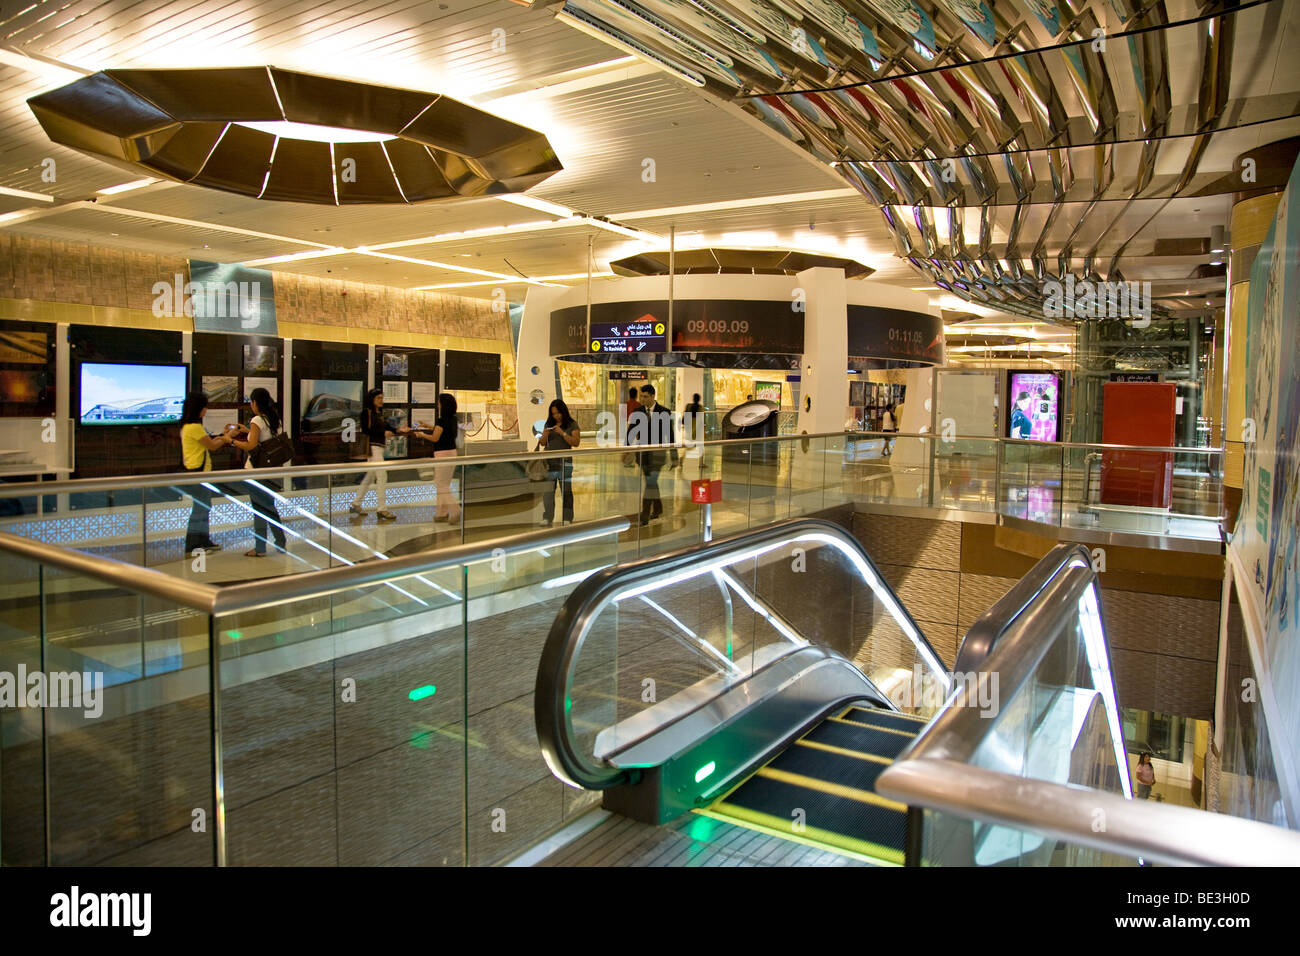 Union Station métro de Dubaï graphiques design d'intérieur Banque D'Images